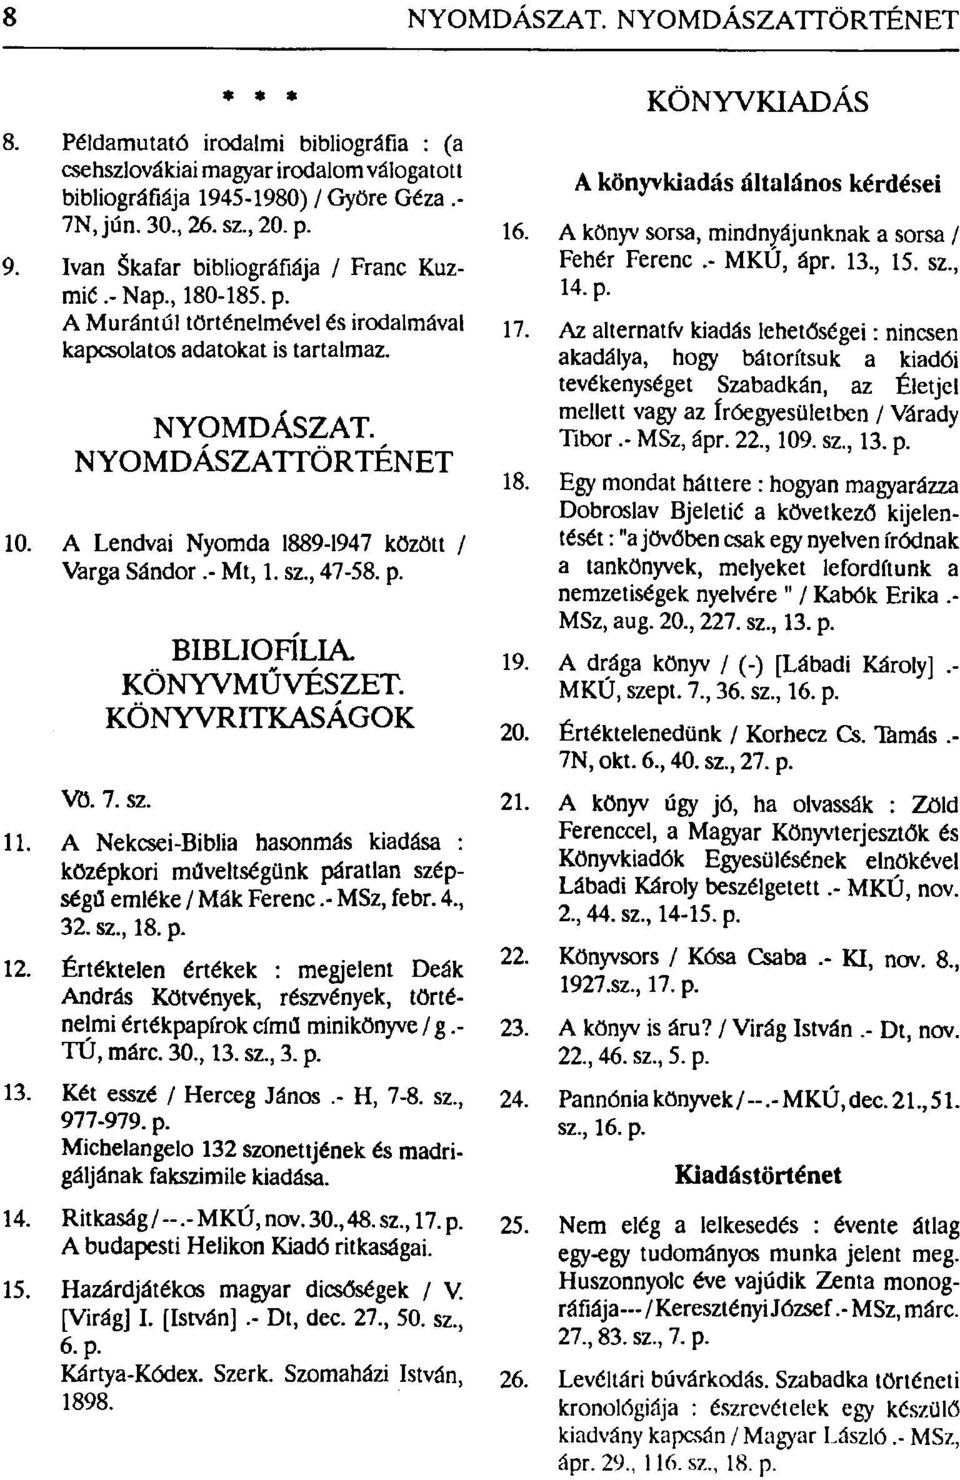 A Lendvai Nyomda 1889-1947 között / Varga Sándor.- Mt, 1. sz., 47-58. p. BIBLIOFILLÁ KÖNYVMŰVÉSZET. KÖNYVRITKASÁGOK Vö. 7. sz. 11.